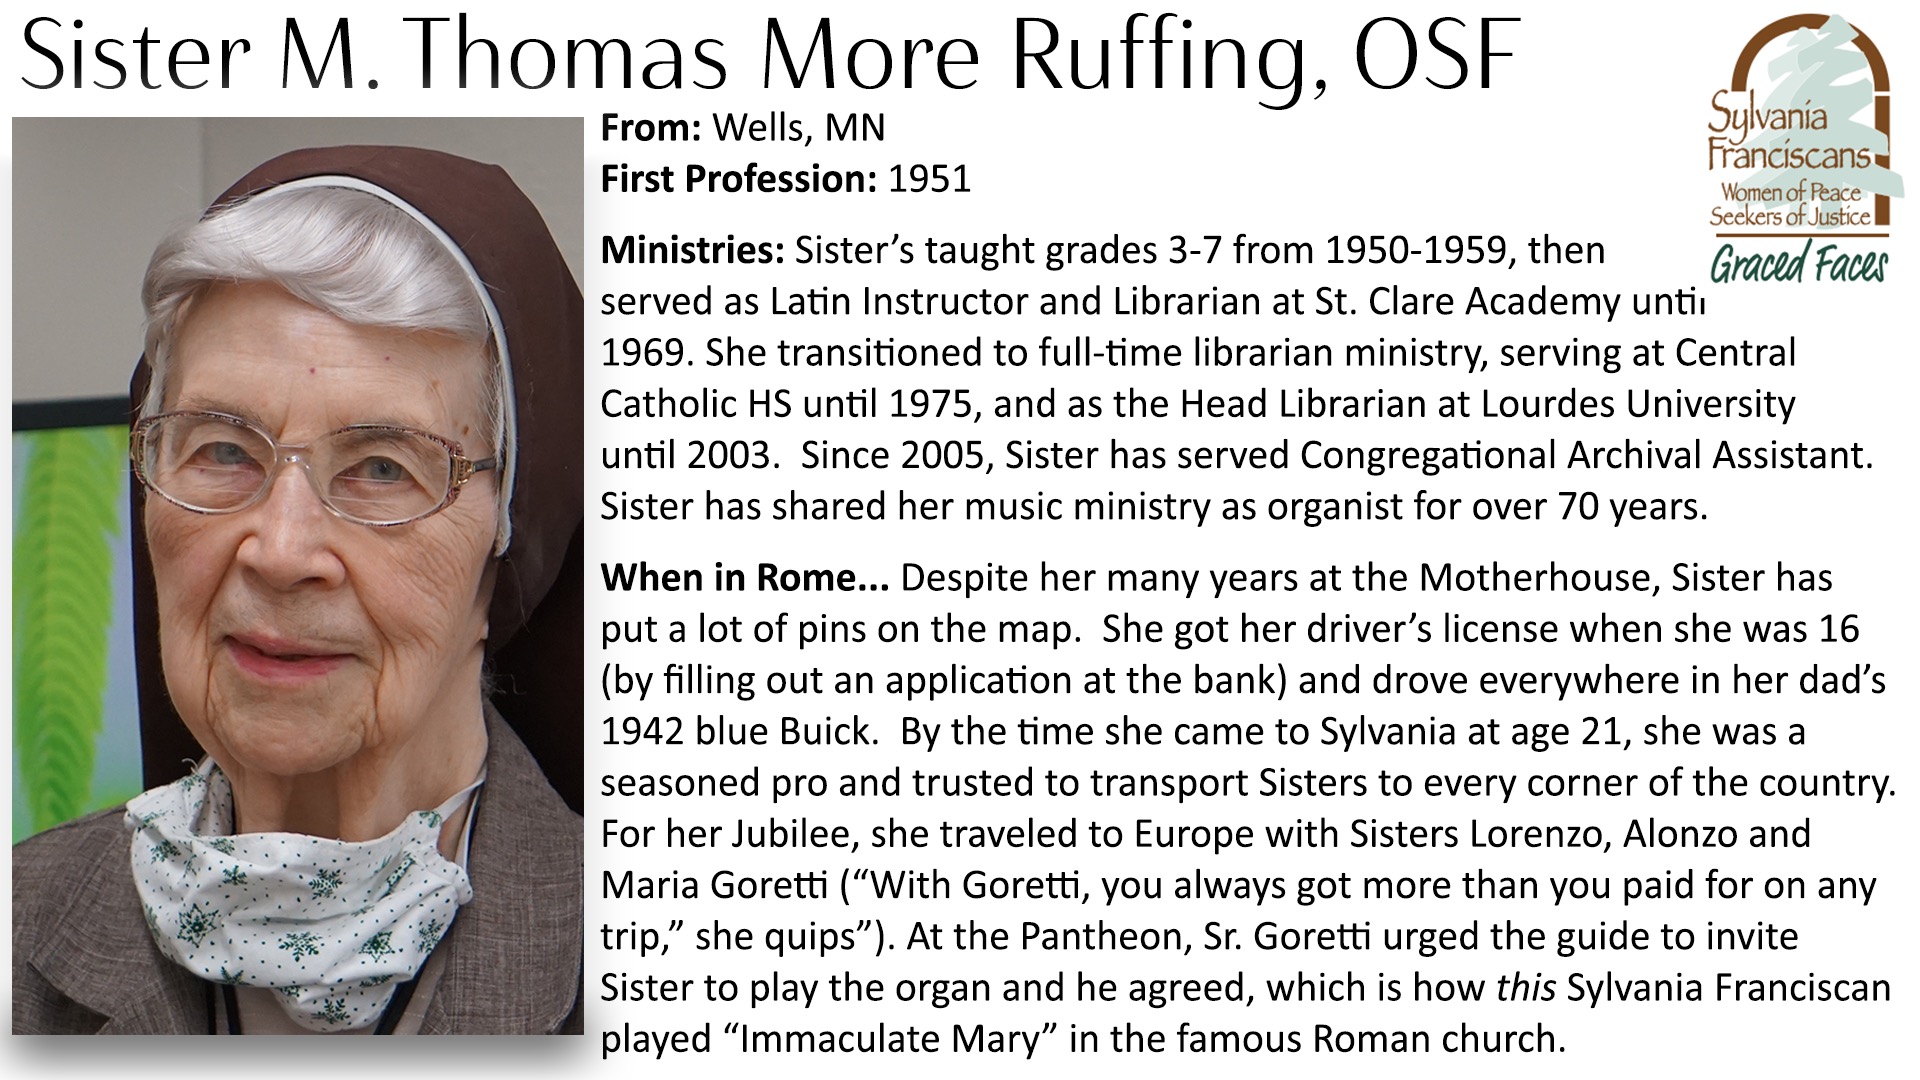 Sister Thomas More Ruffing, OSF